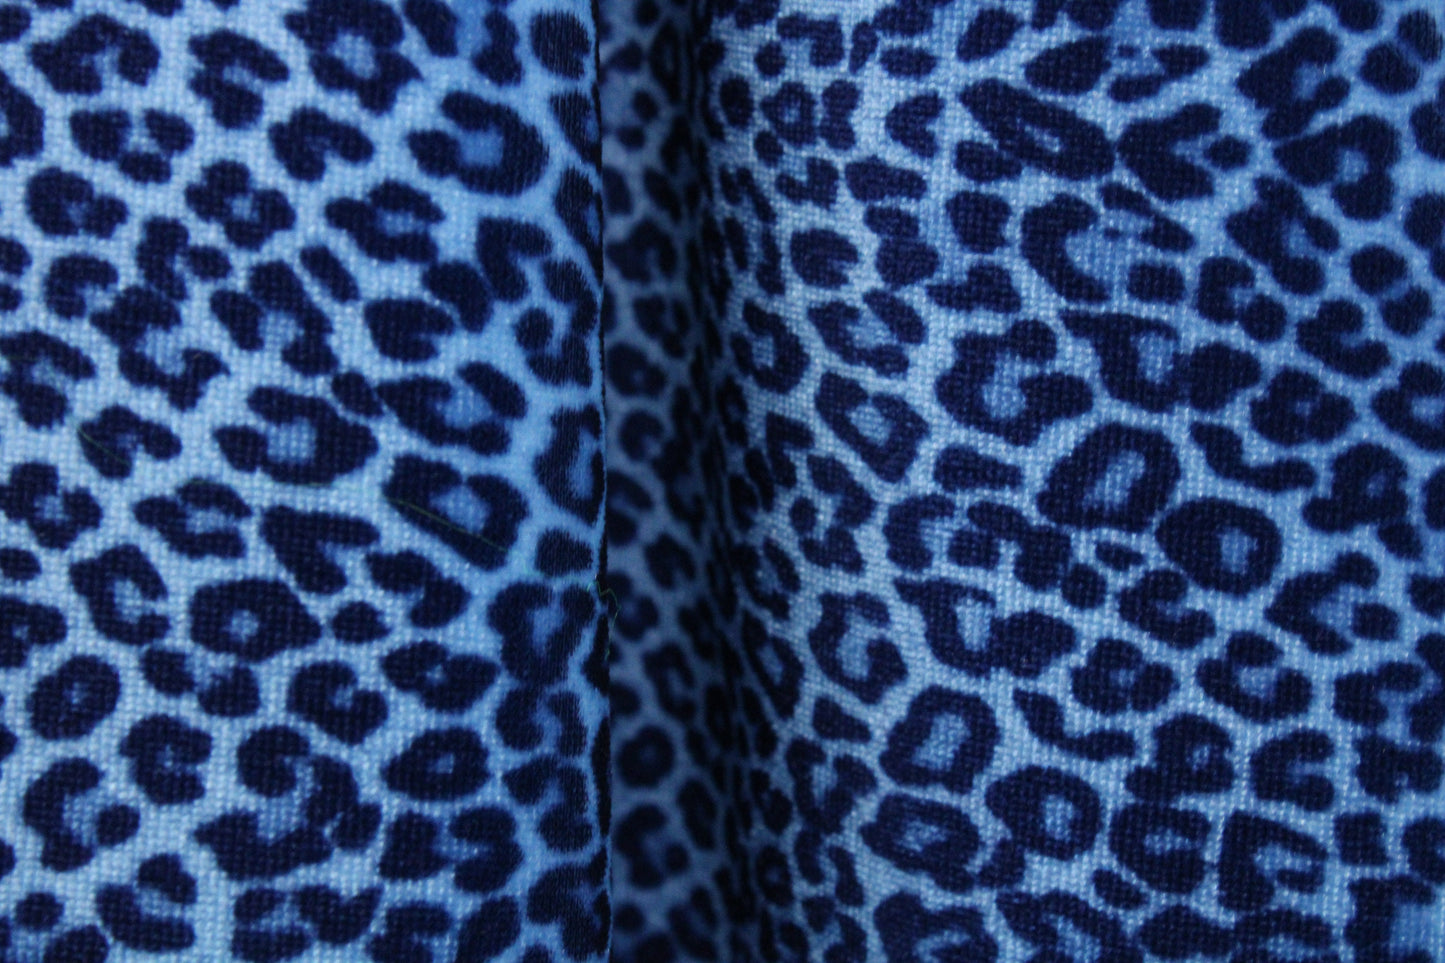 Blue Cheetah